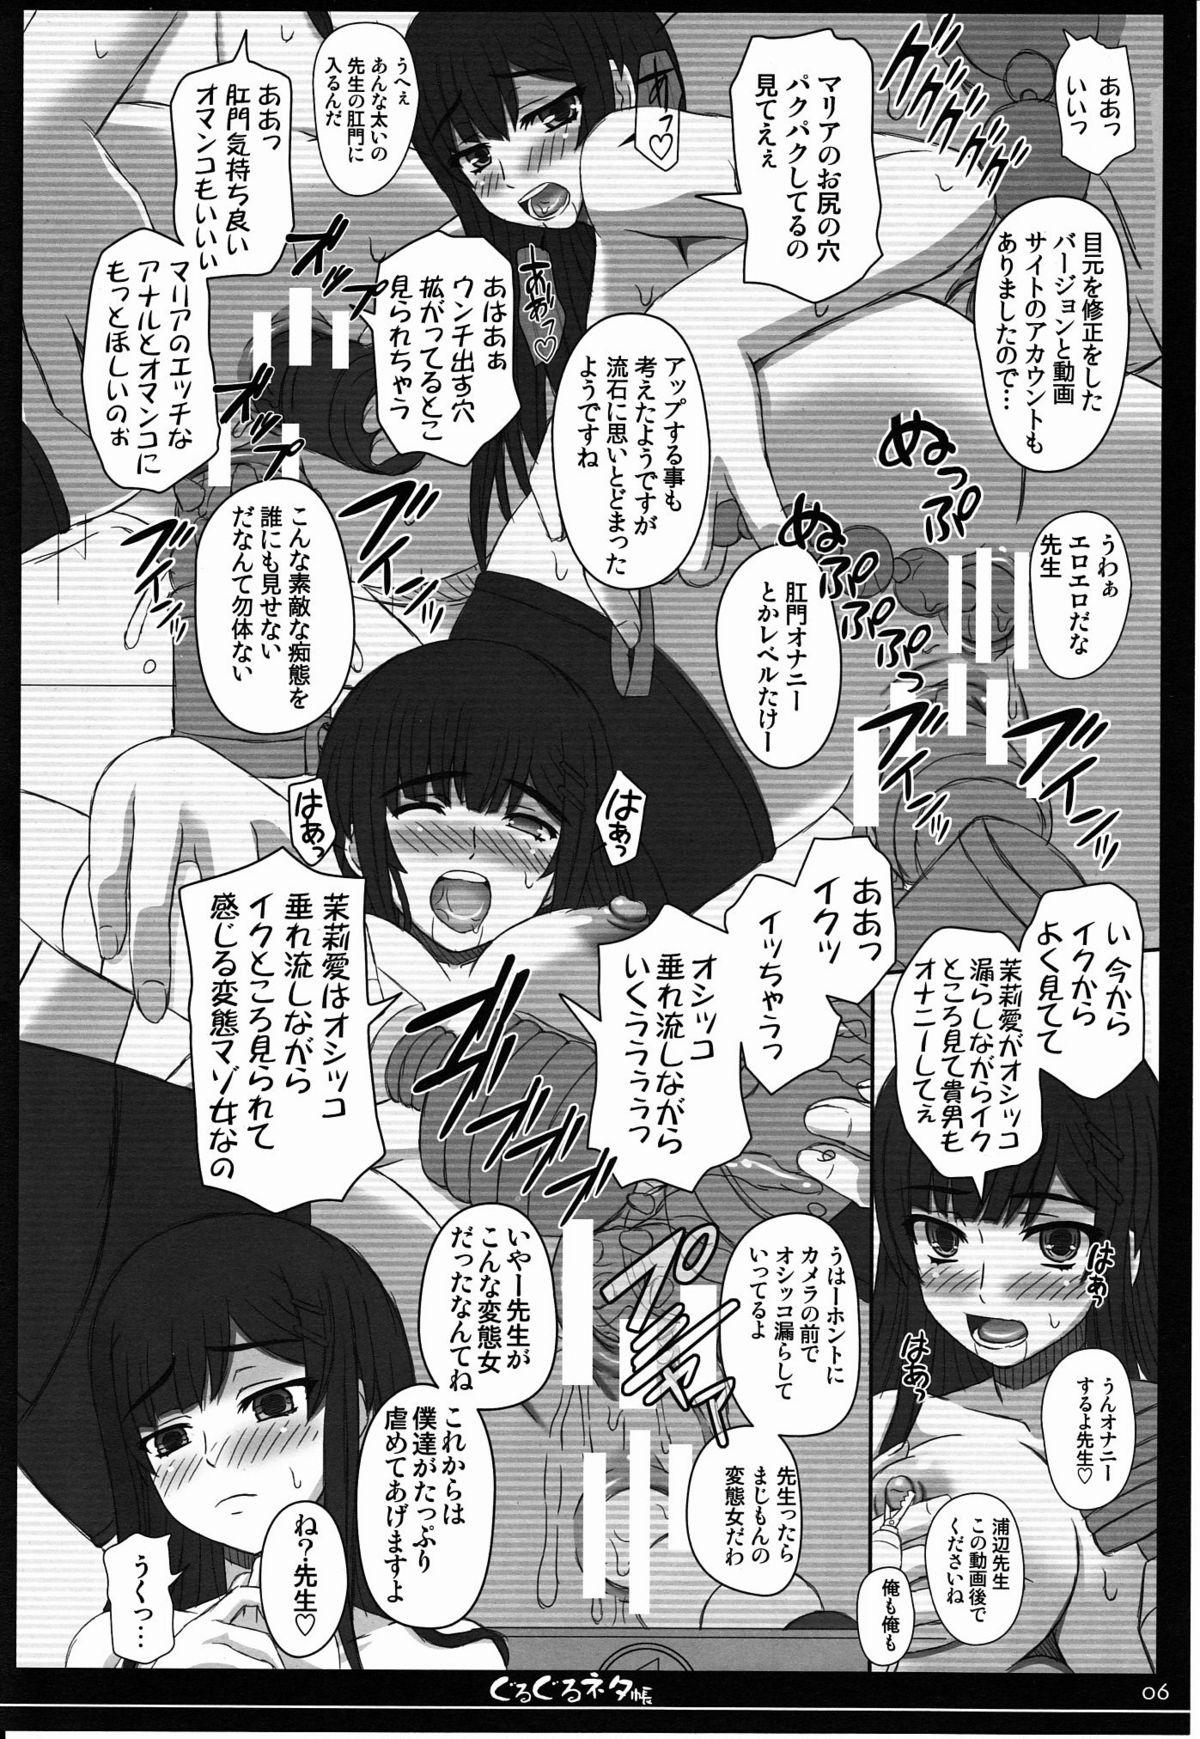 Best Blowjob Ever Shiawase no Katachi no Guruguru Netachou 80 Chunky - Page 5